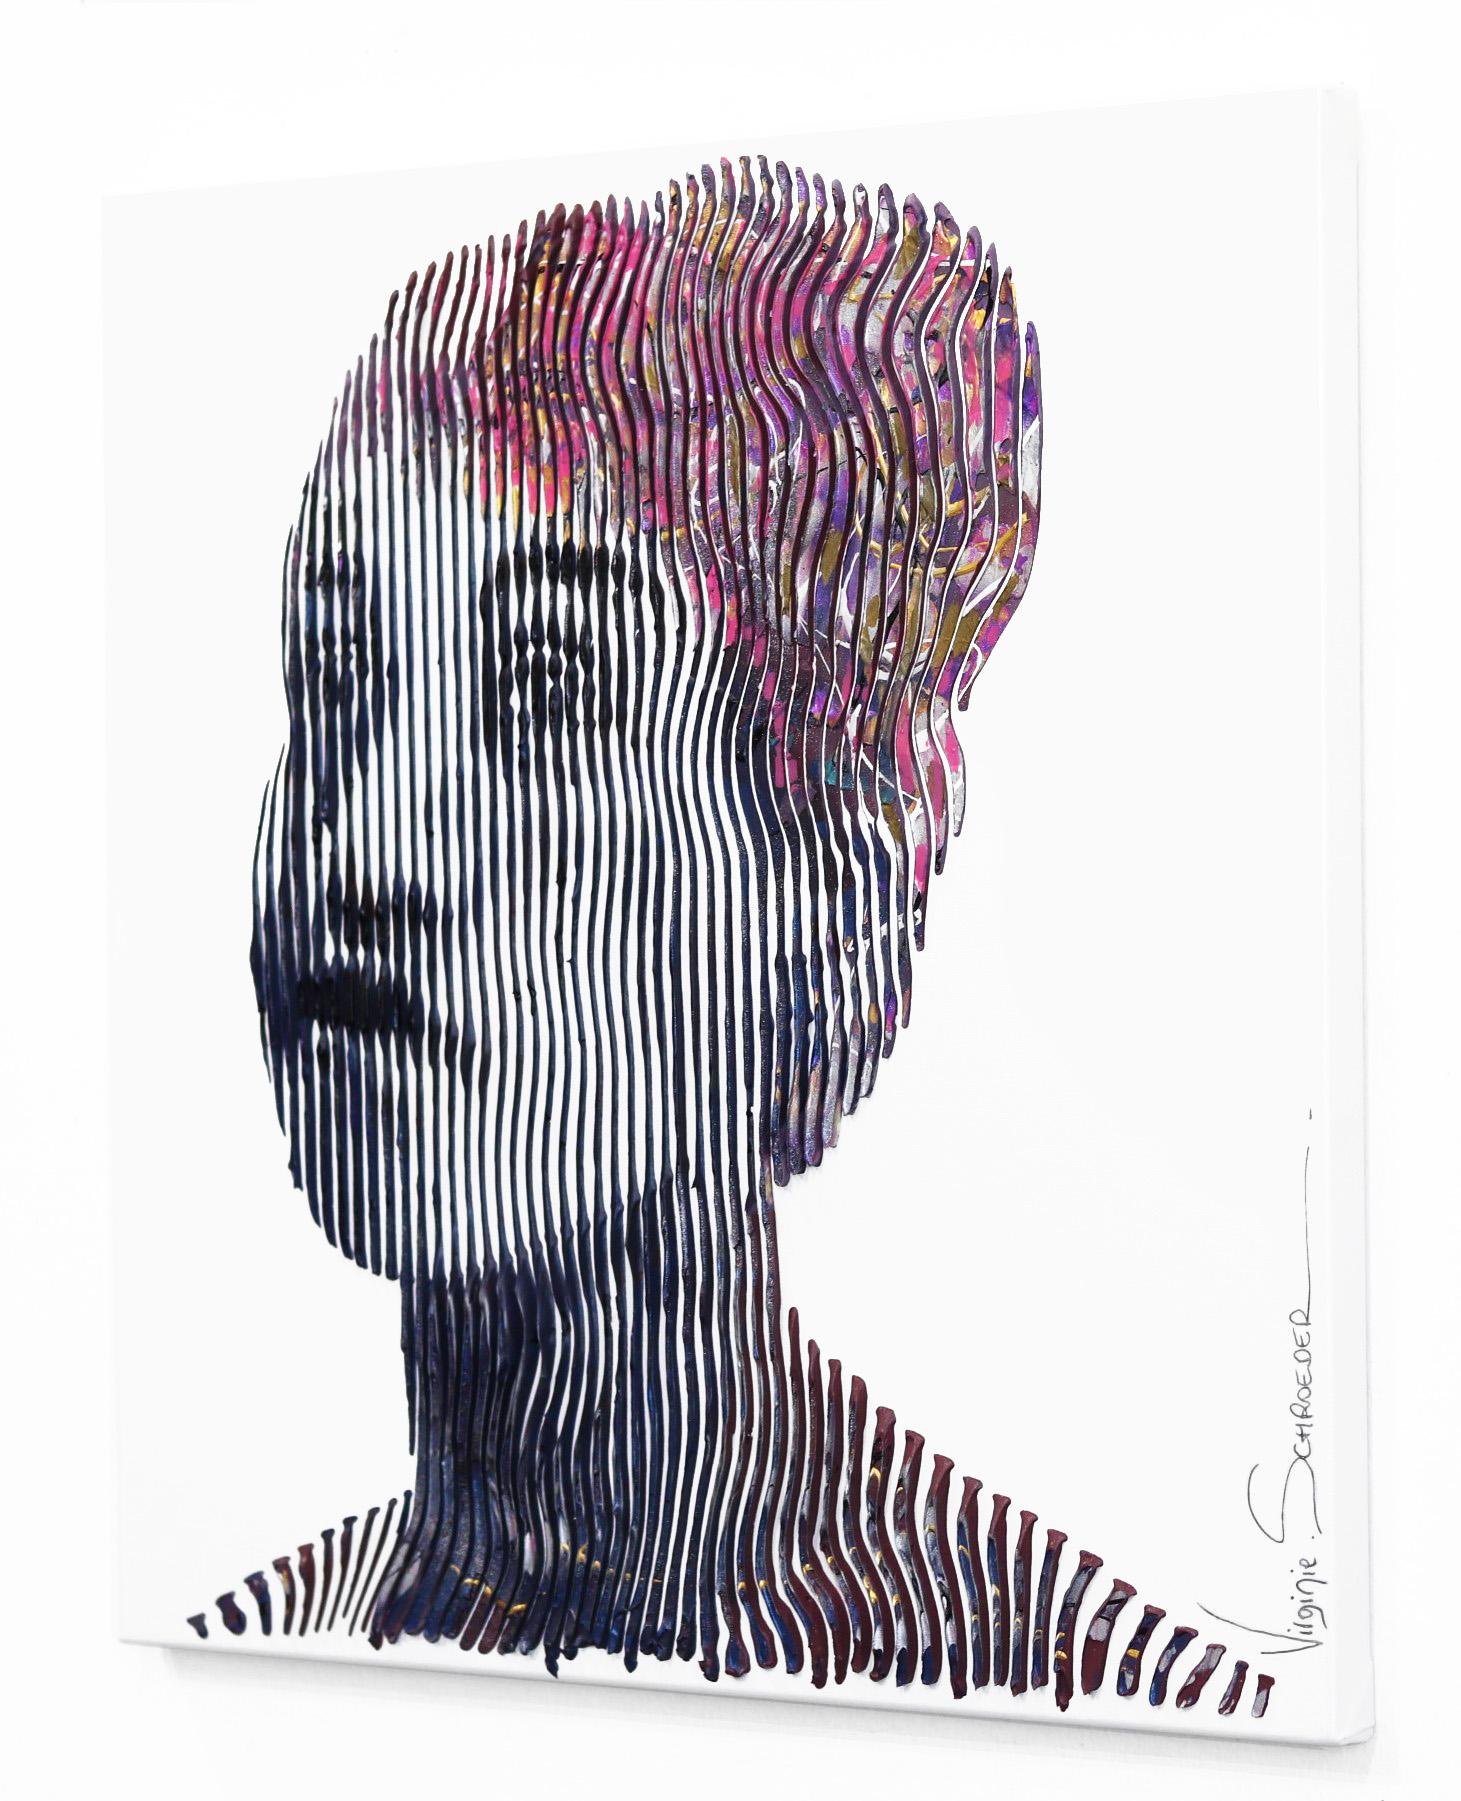 Jouant sur l'interaction entre les espaces positifs et négatifs, les couleurs fortes sur des fonds neutres, l'artiste canadienne Virginie Schroeder crée des portraits pop art et des images emblématiques de la culture pop qui défient la